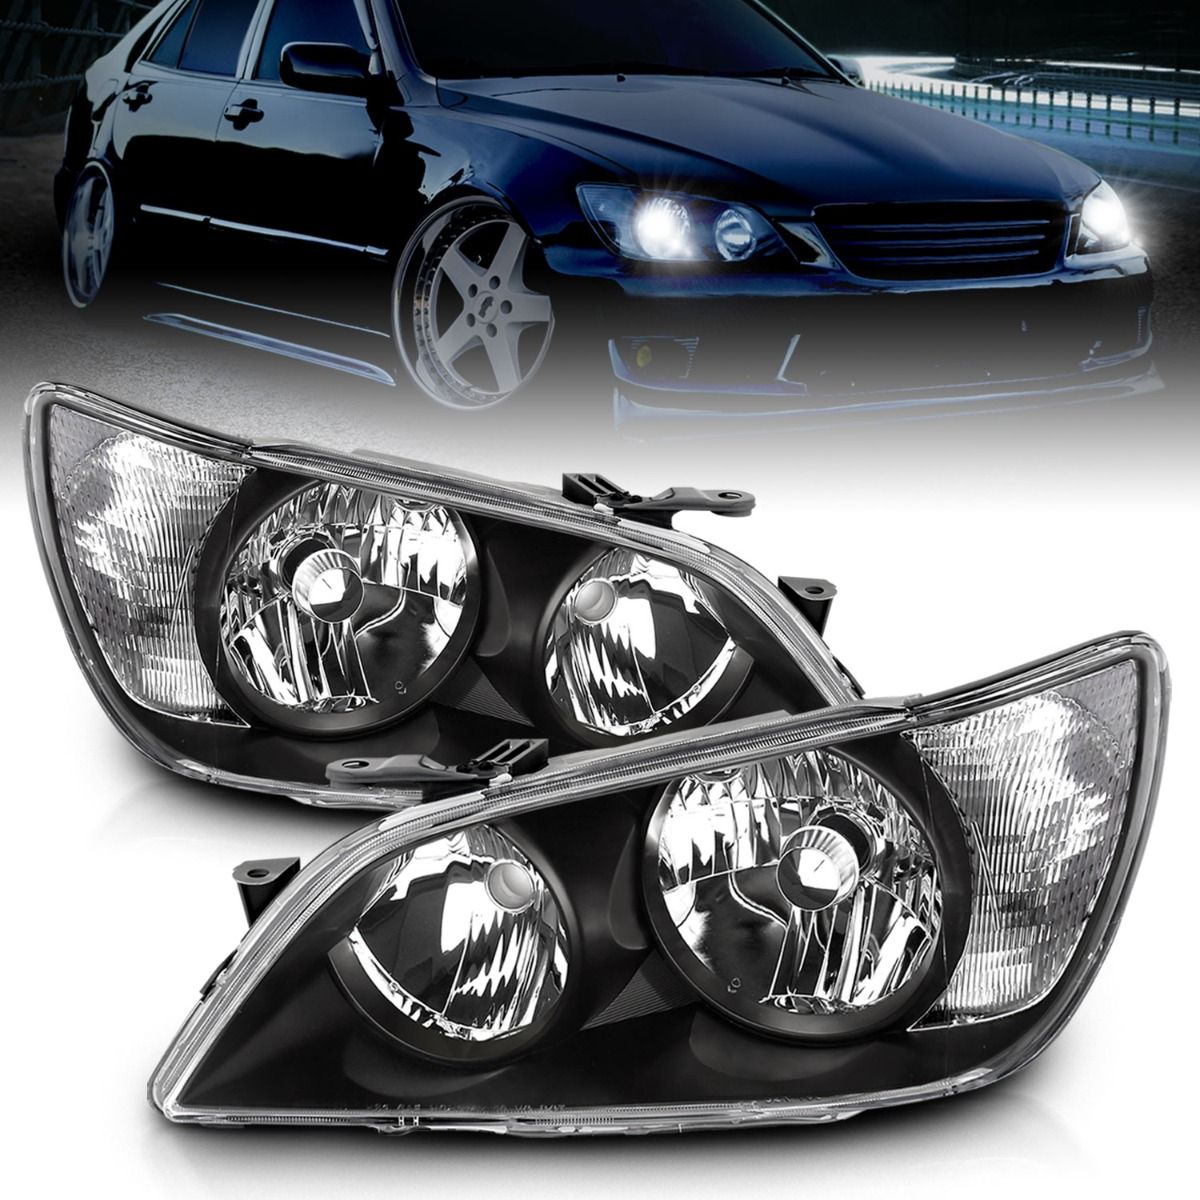 Lexus Projector Headlights, IS300 Headlights, IS300 01-05 Headlights, Black Projector Headlights, Anzo Projector Headlights